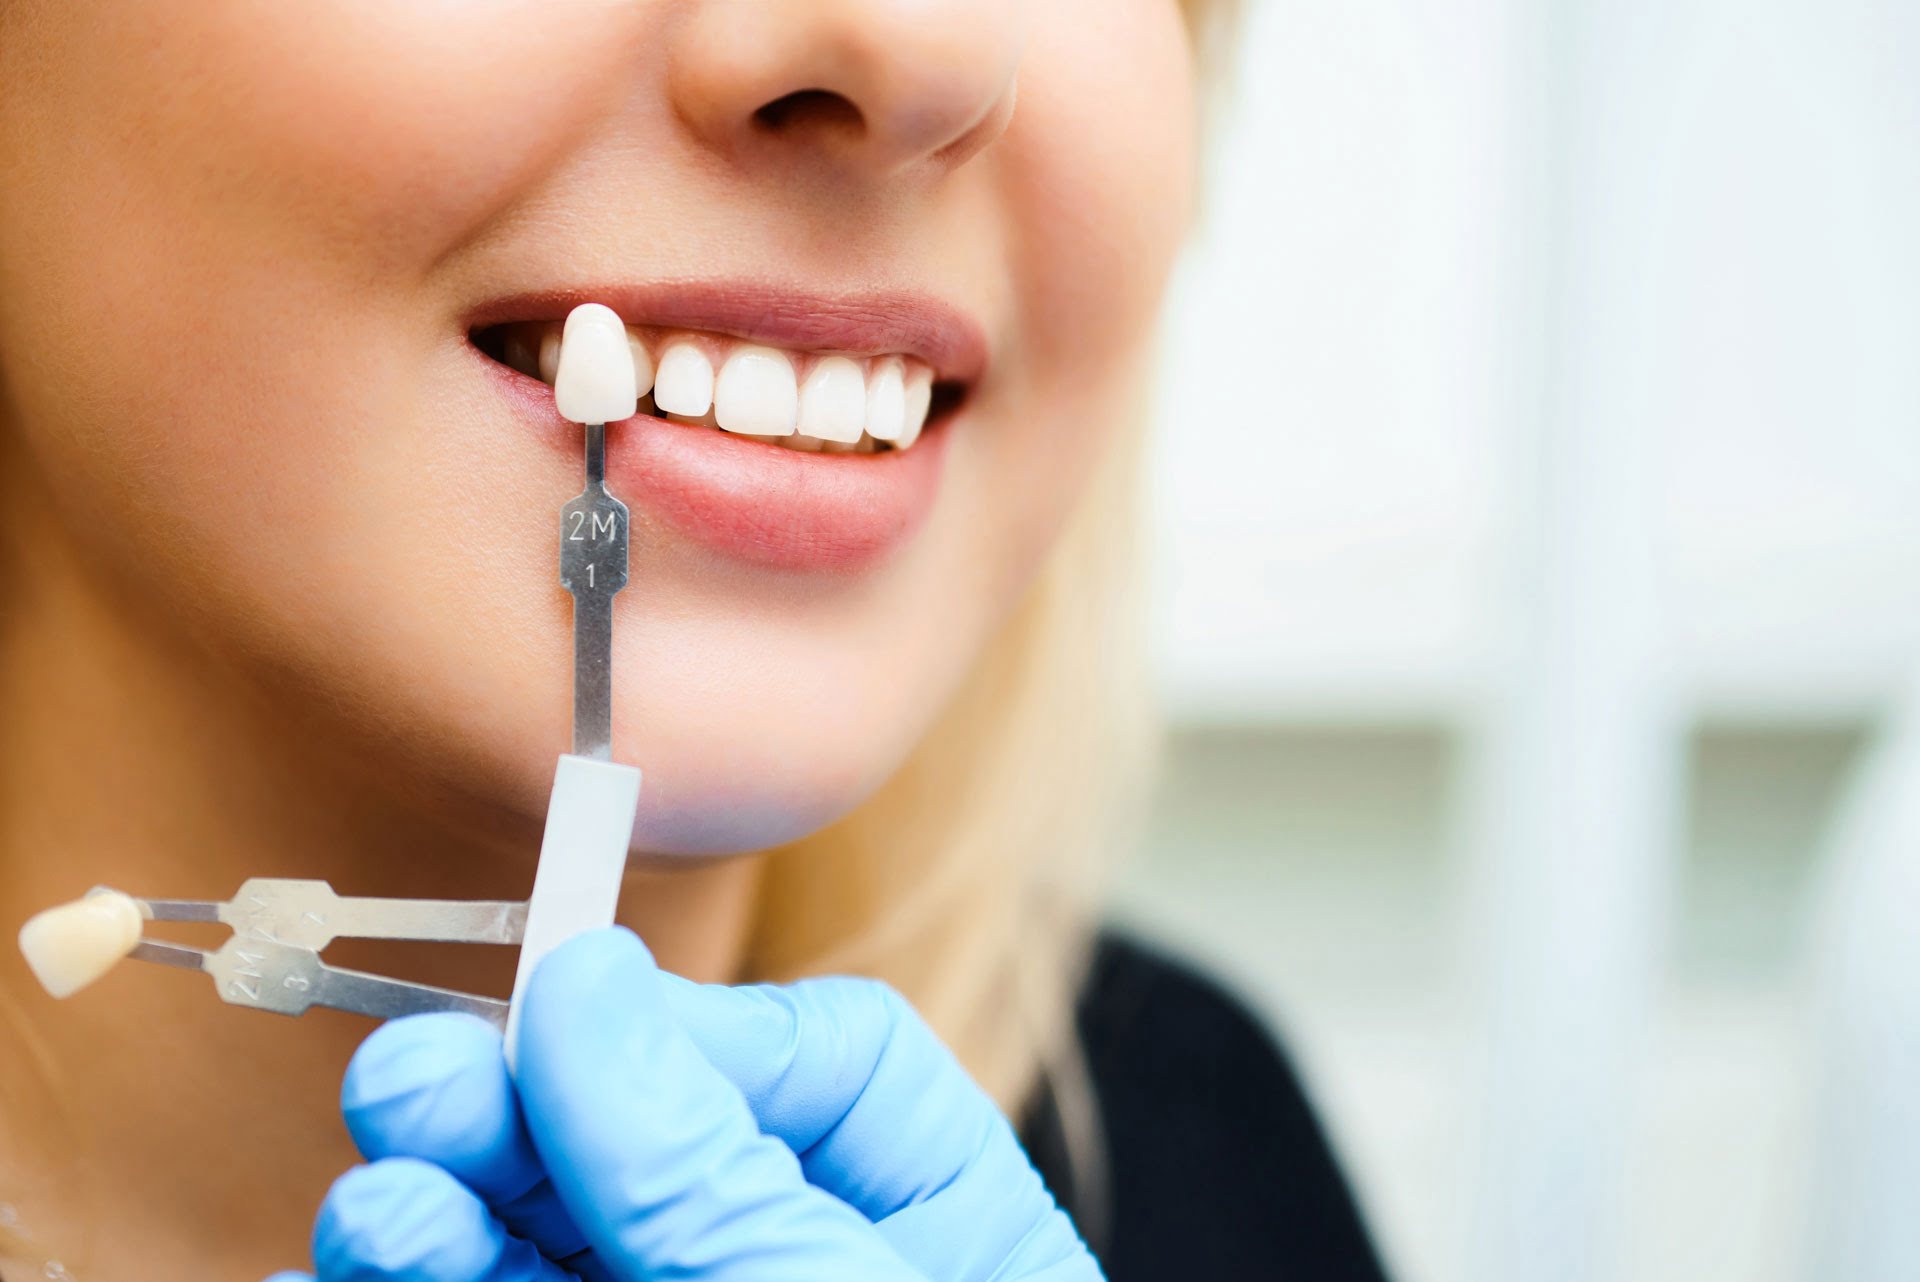 Eksik dişlerin sağlığınız üzerindeki olumsuz 4 etkisi #1